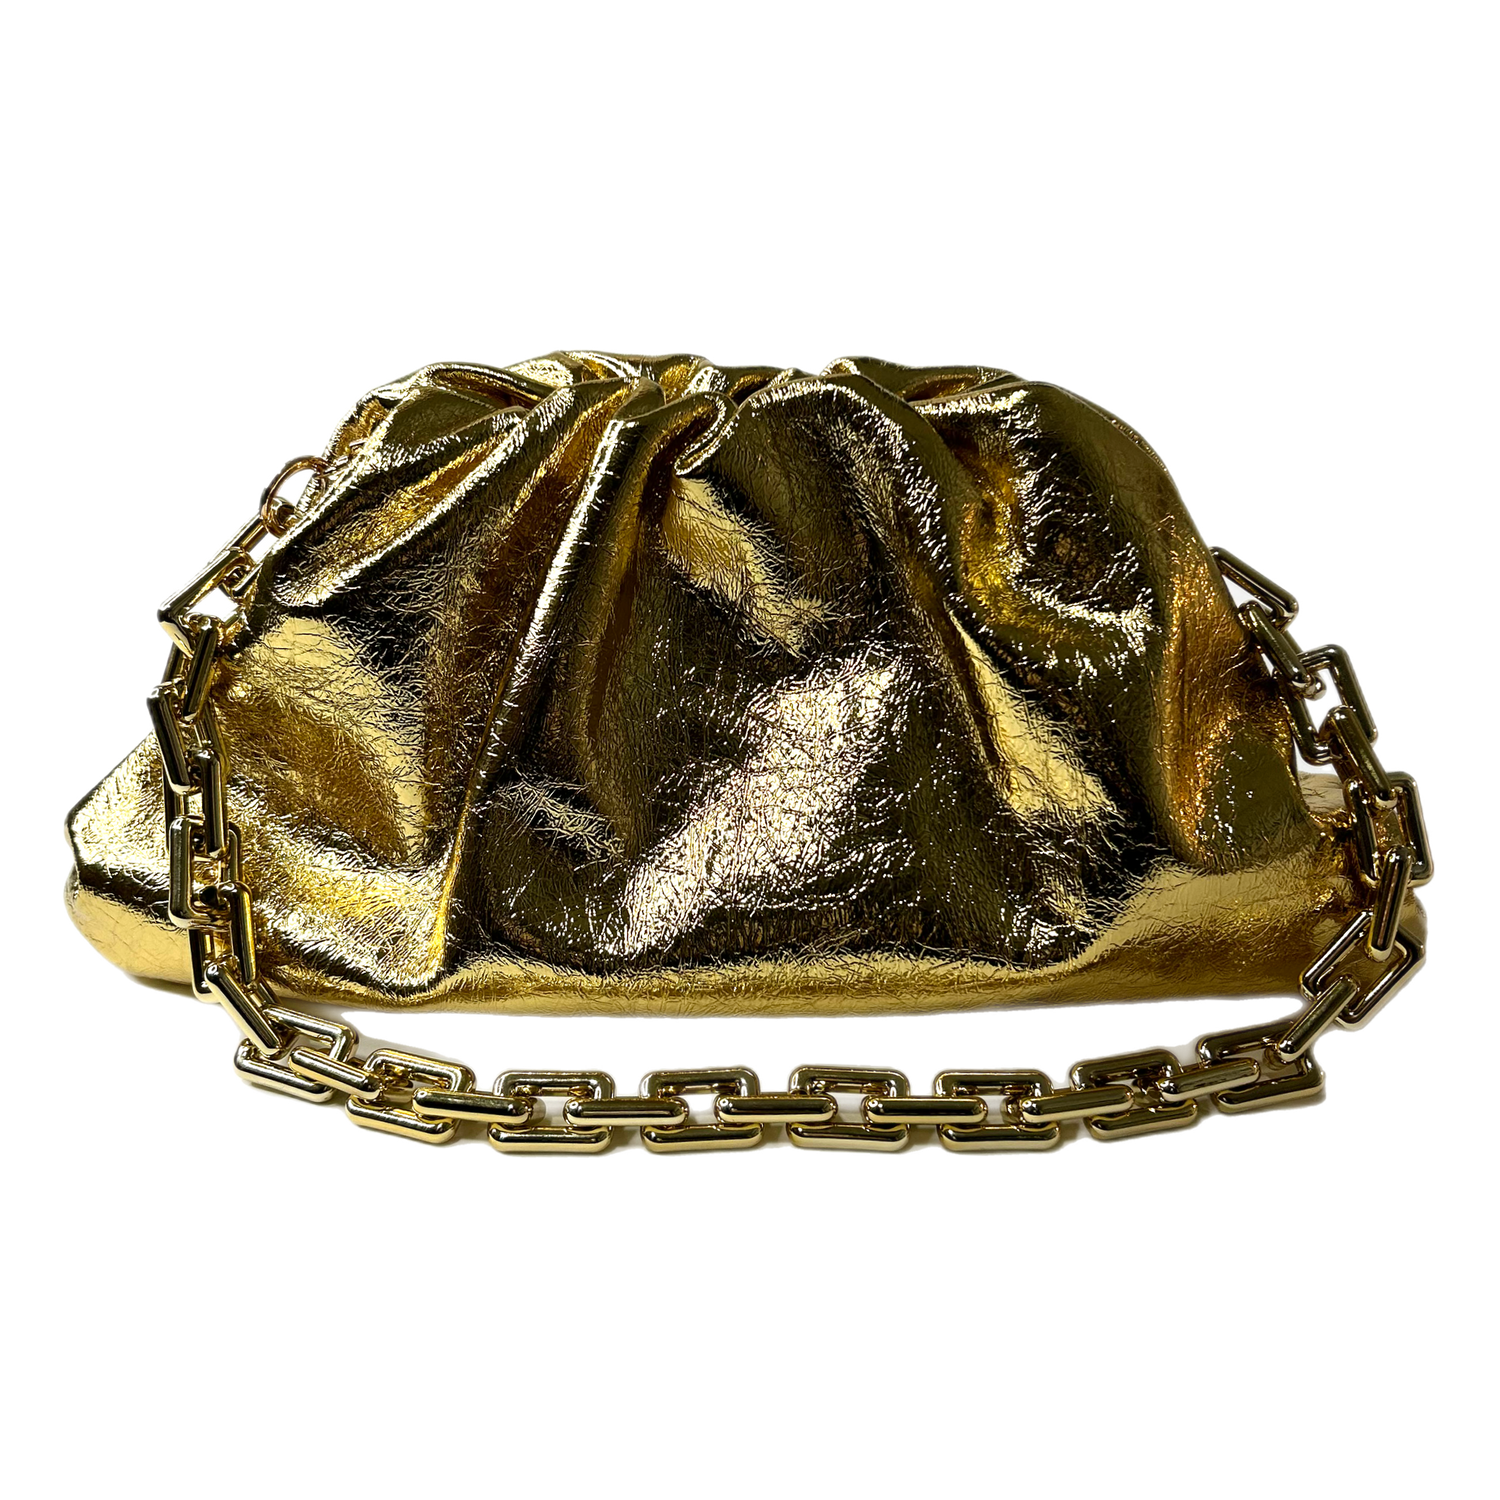 Zyla Gold Dumpling Bag